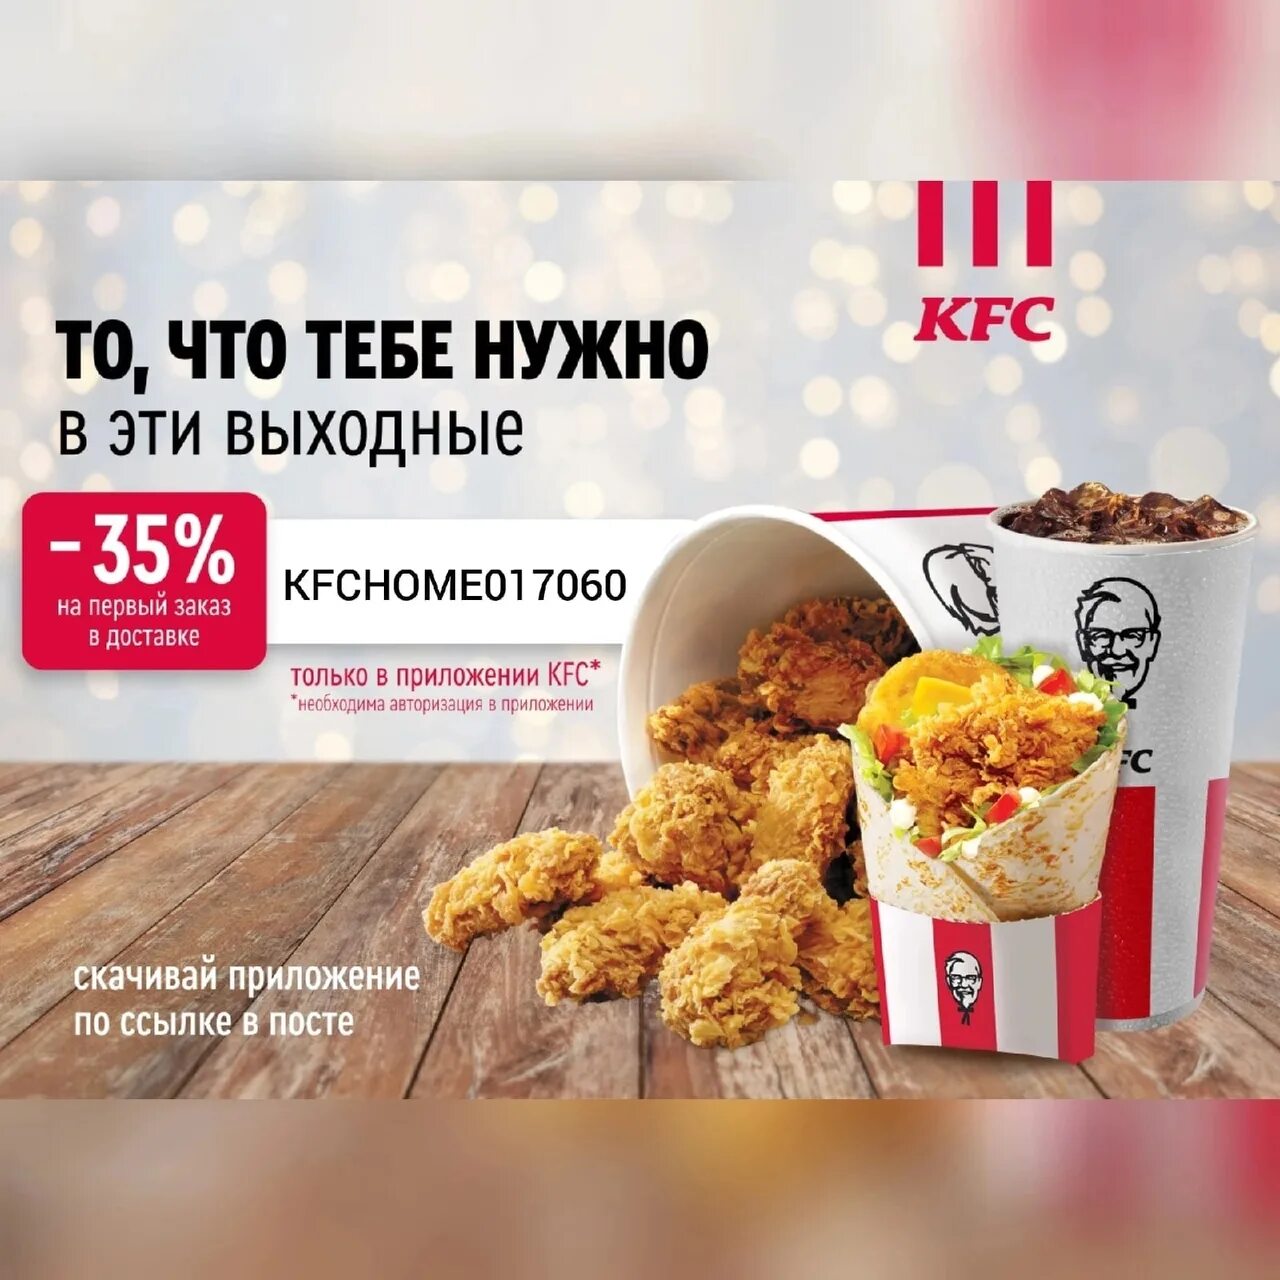 Промокод kfc на первый заказ в приложении. KFC доставка. KFC скидка в delivery.